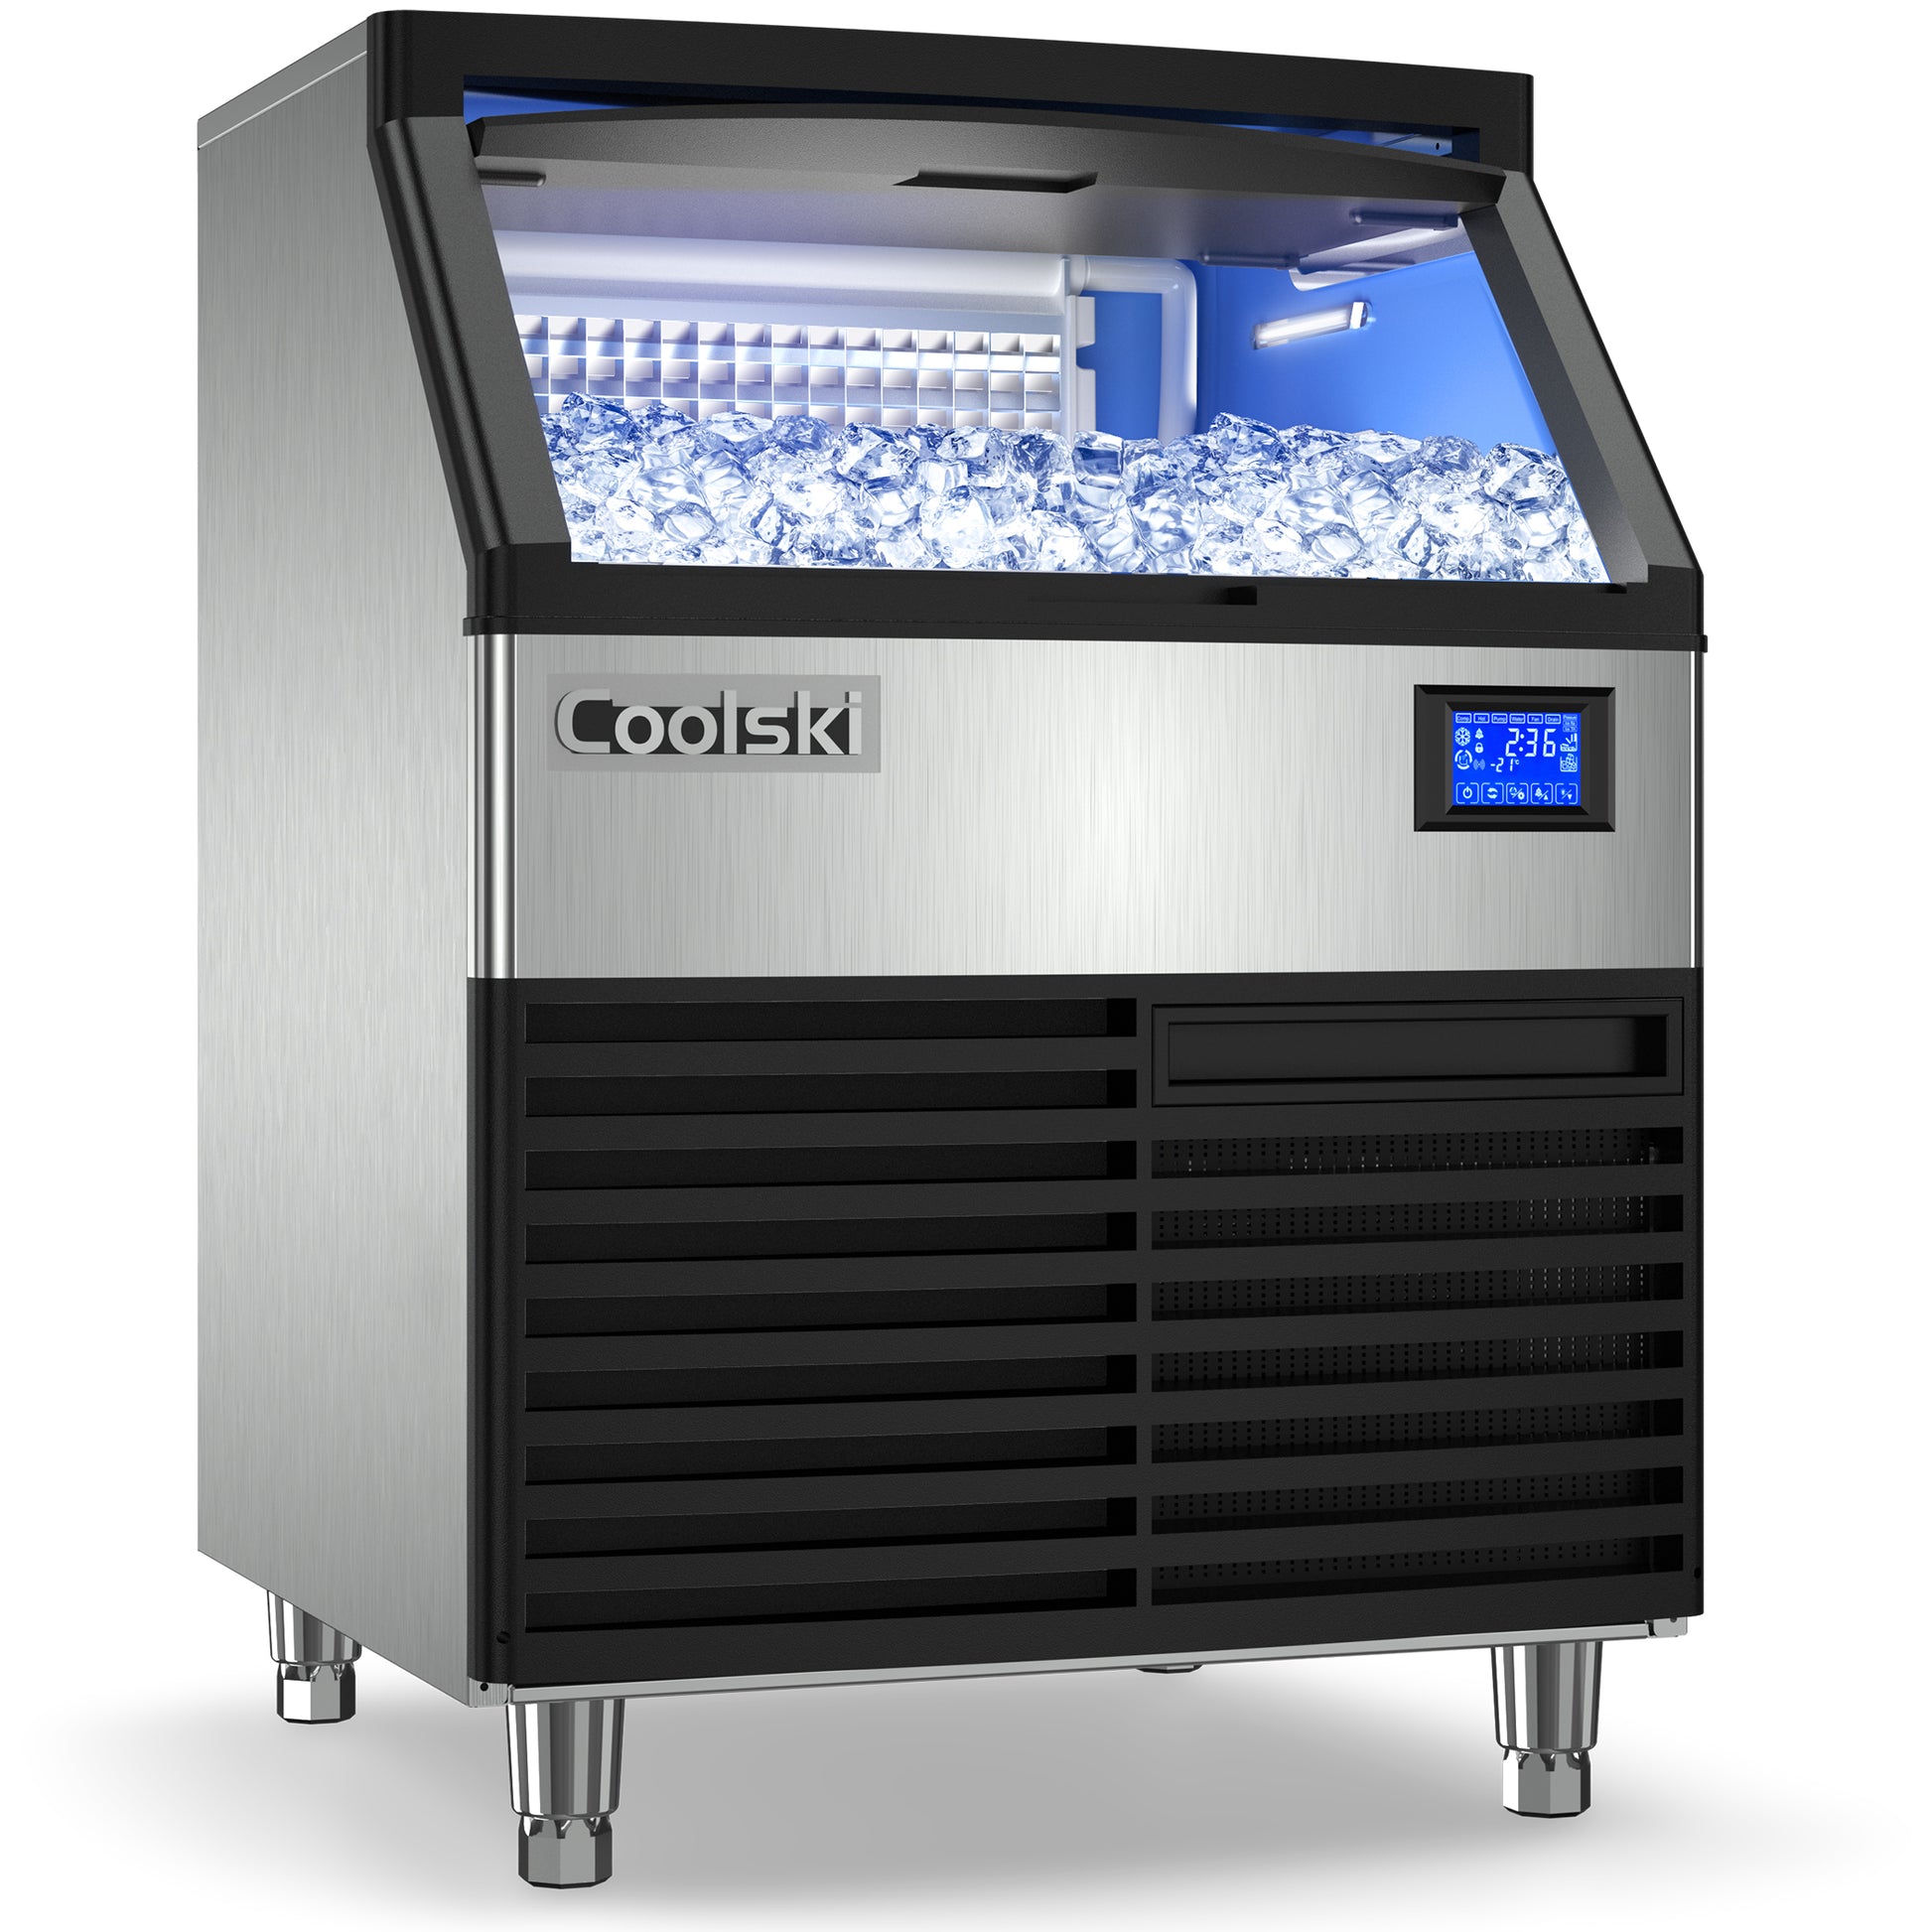 VEVOR 300 lb. / 24 H Commercial Ice Maker Large Storage Bin LCD